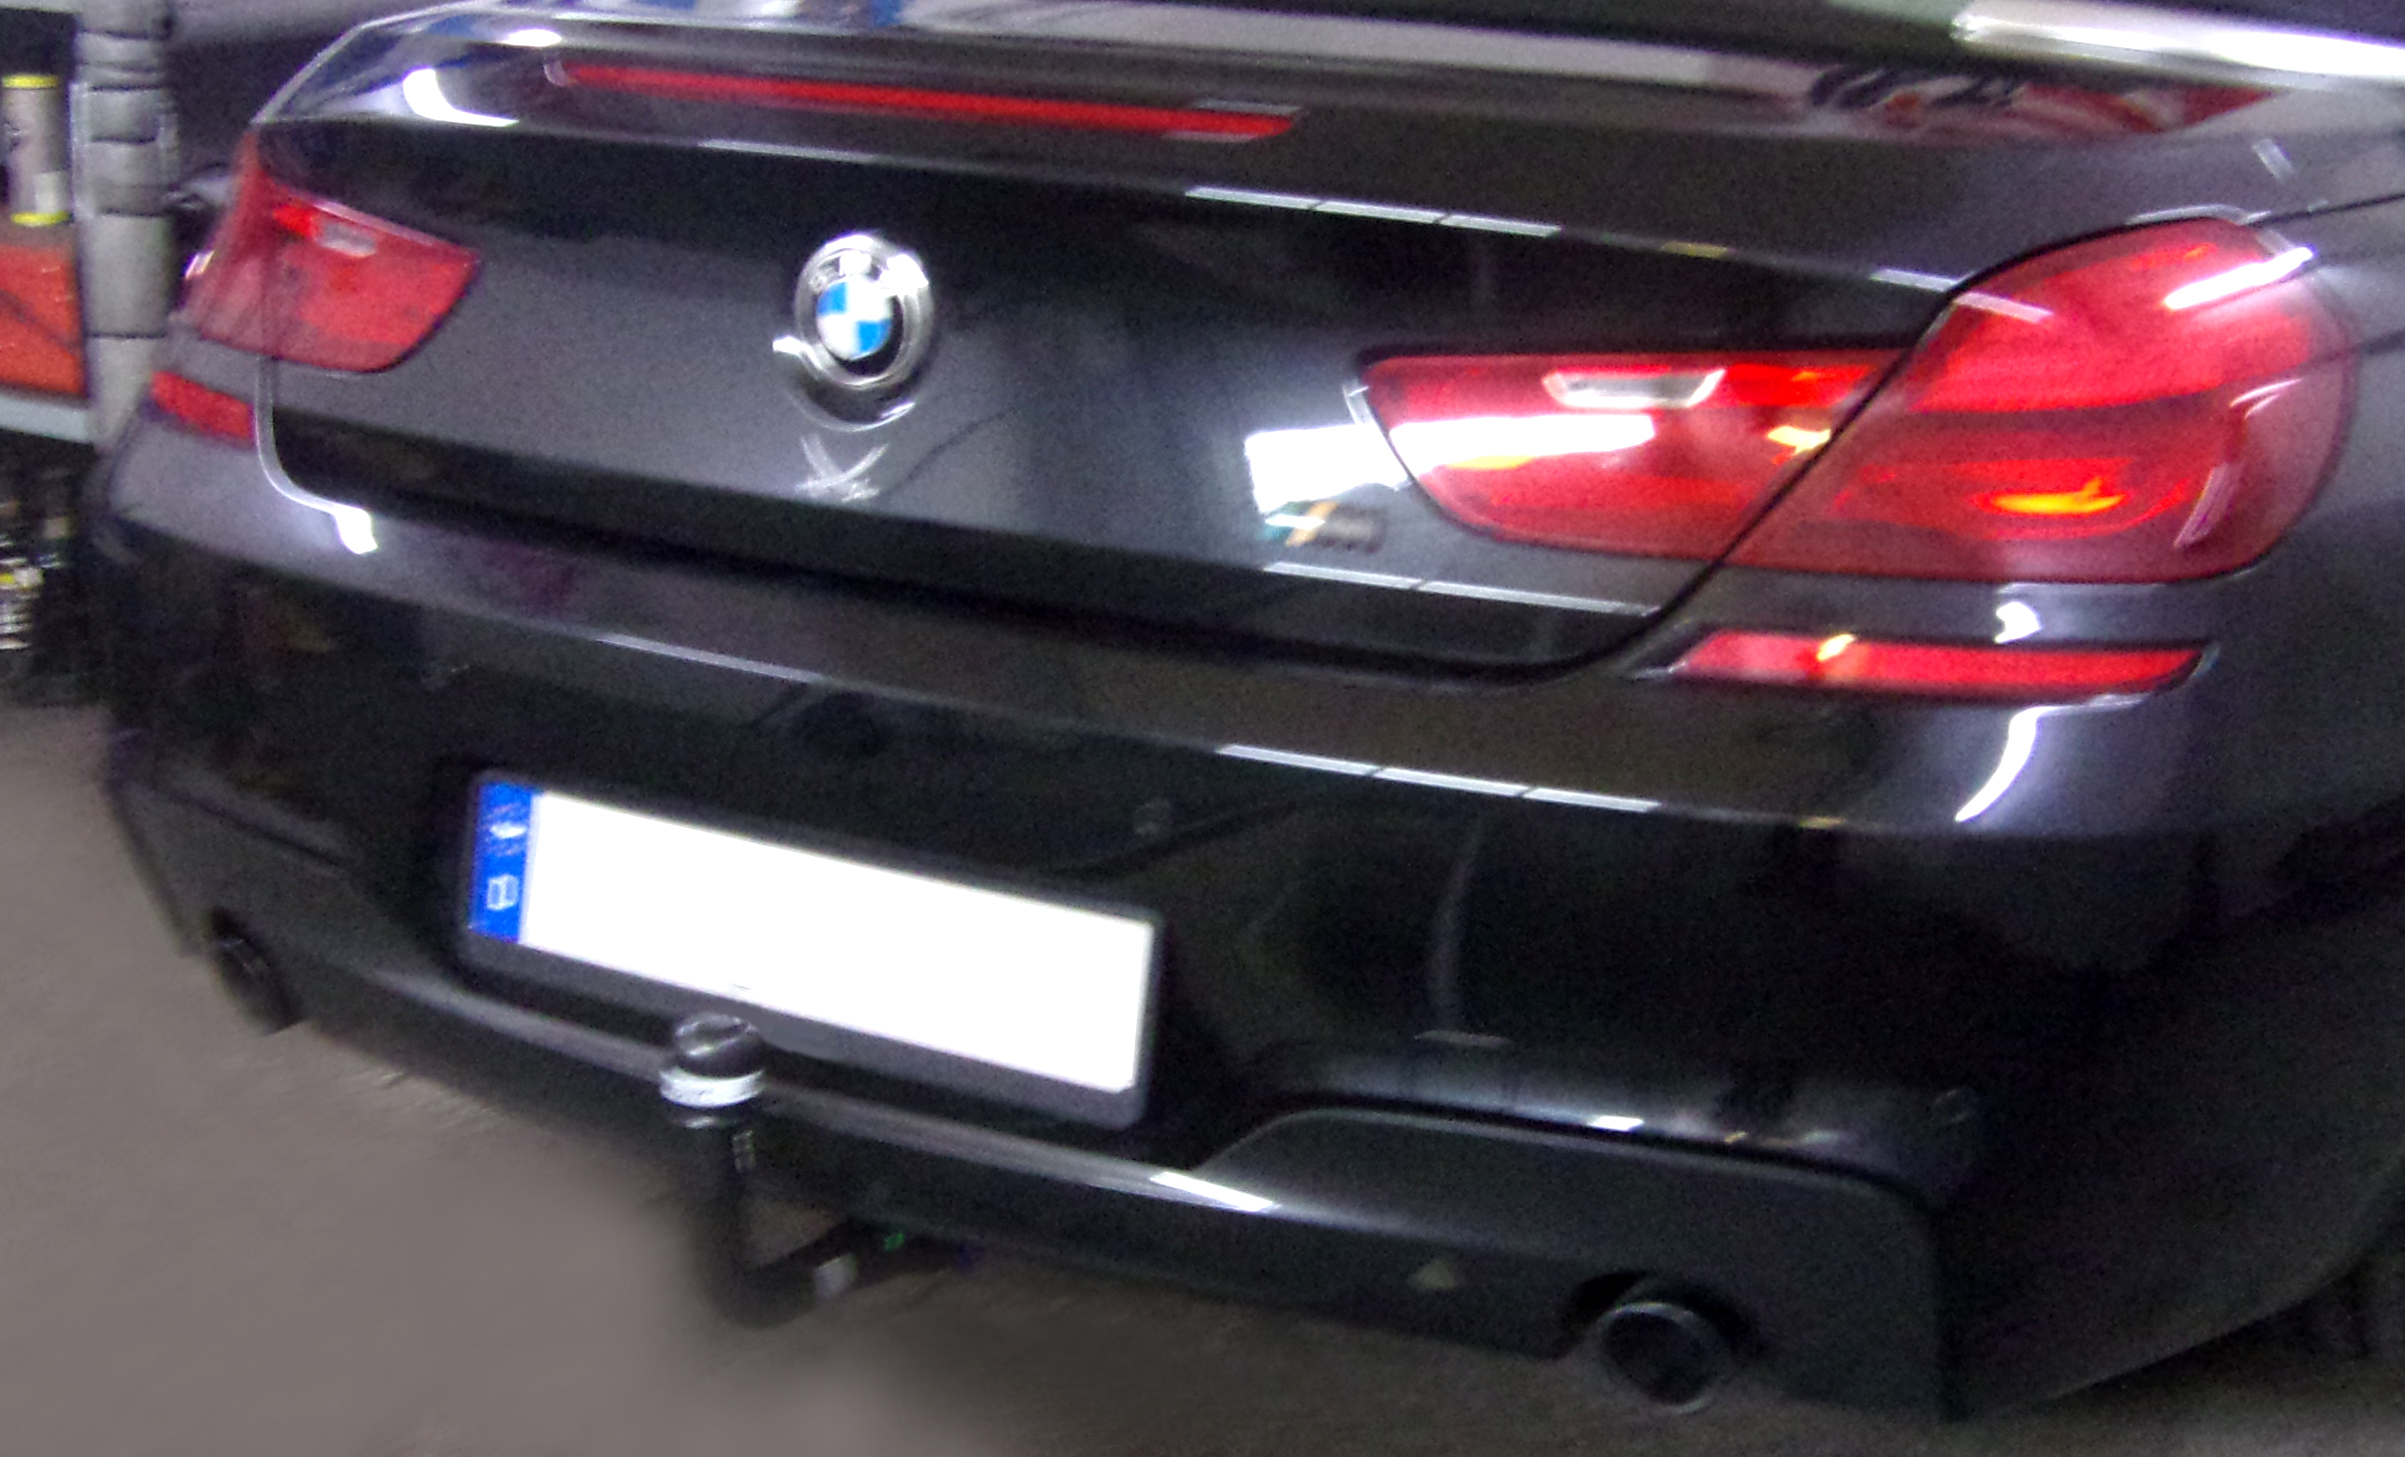 Anhängerkupplung für BMW-6er Cabrio F12 inkl. M- Sportpaket, nur für Fzg. mit Anhängelastfreigabe, Baureihe 2011- V-abnehmbar